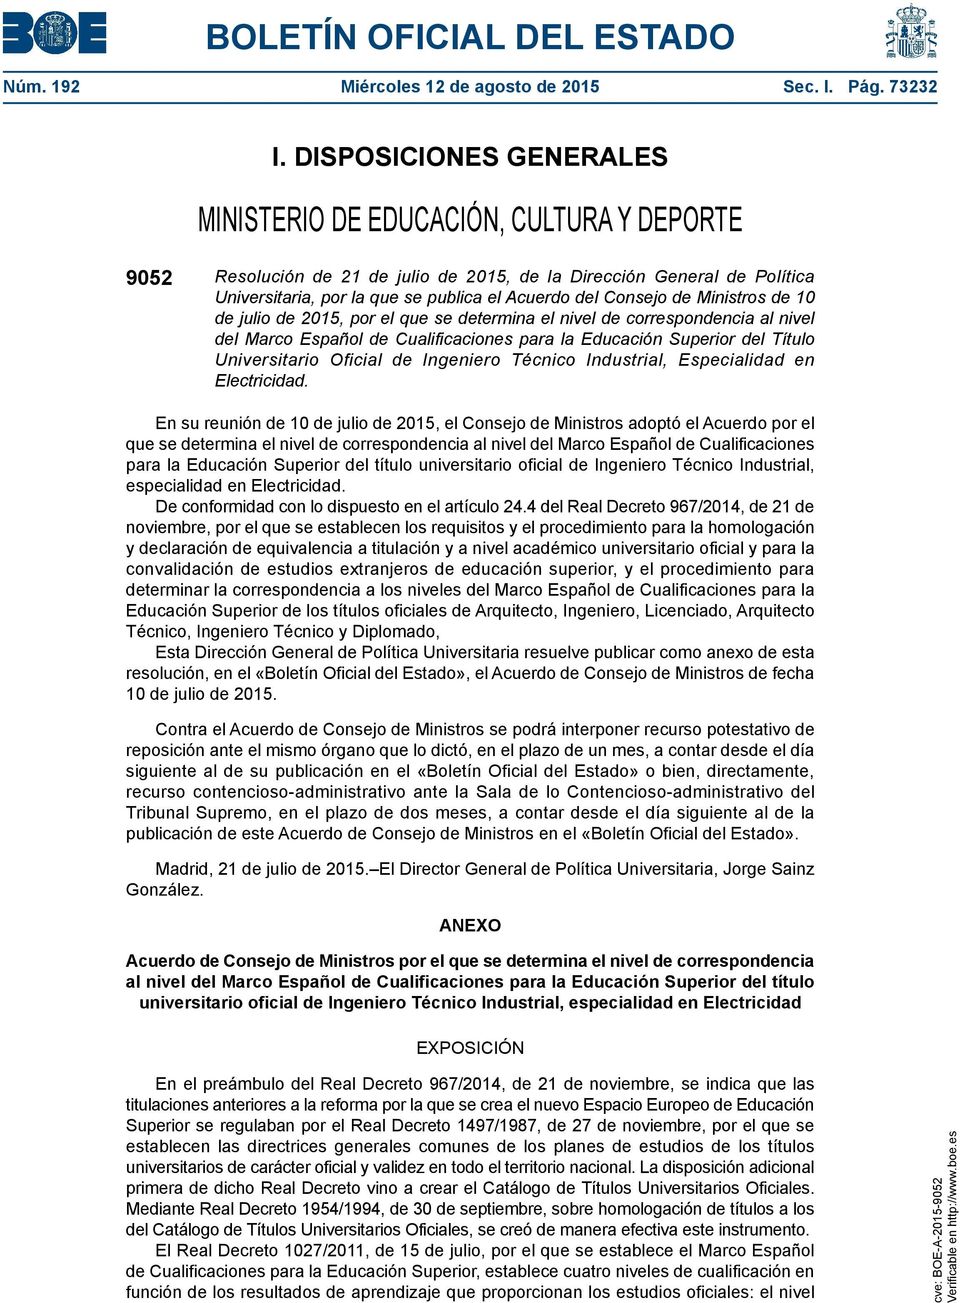 Consejo de Ministros de 10 de julio de 2015, por el que se determina el nivel de correspondencia al nivel del Marco Español de Cualificaciones para la Educación Superior del Título Universitario